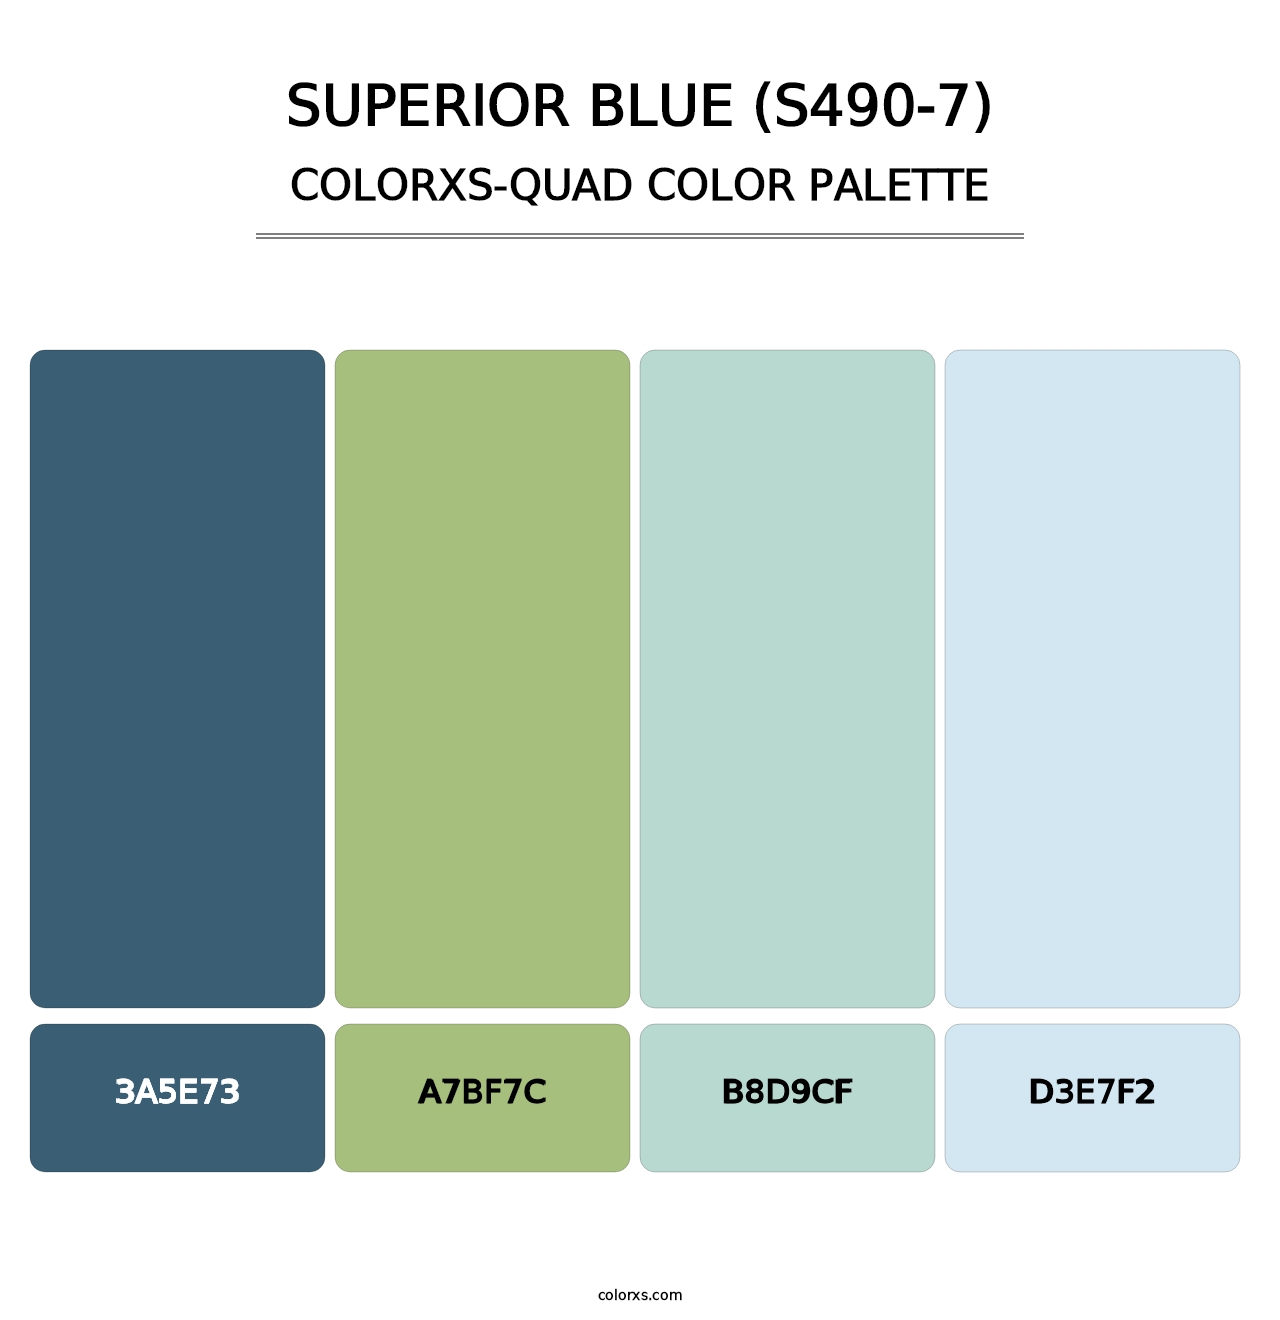 Superior Blue (S490-7) - Colorxs Quad Palette